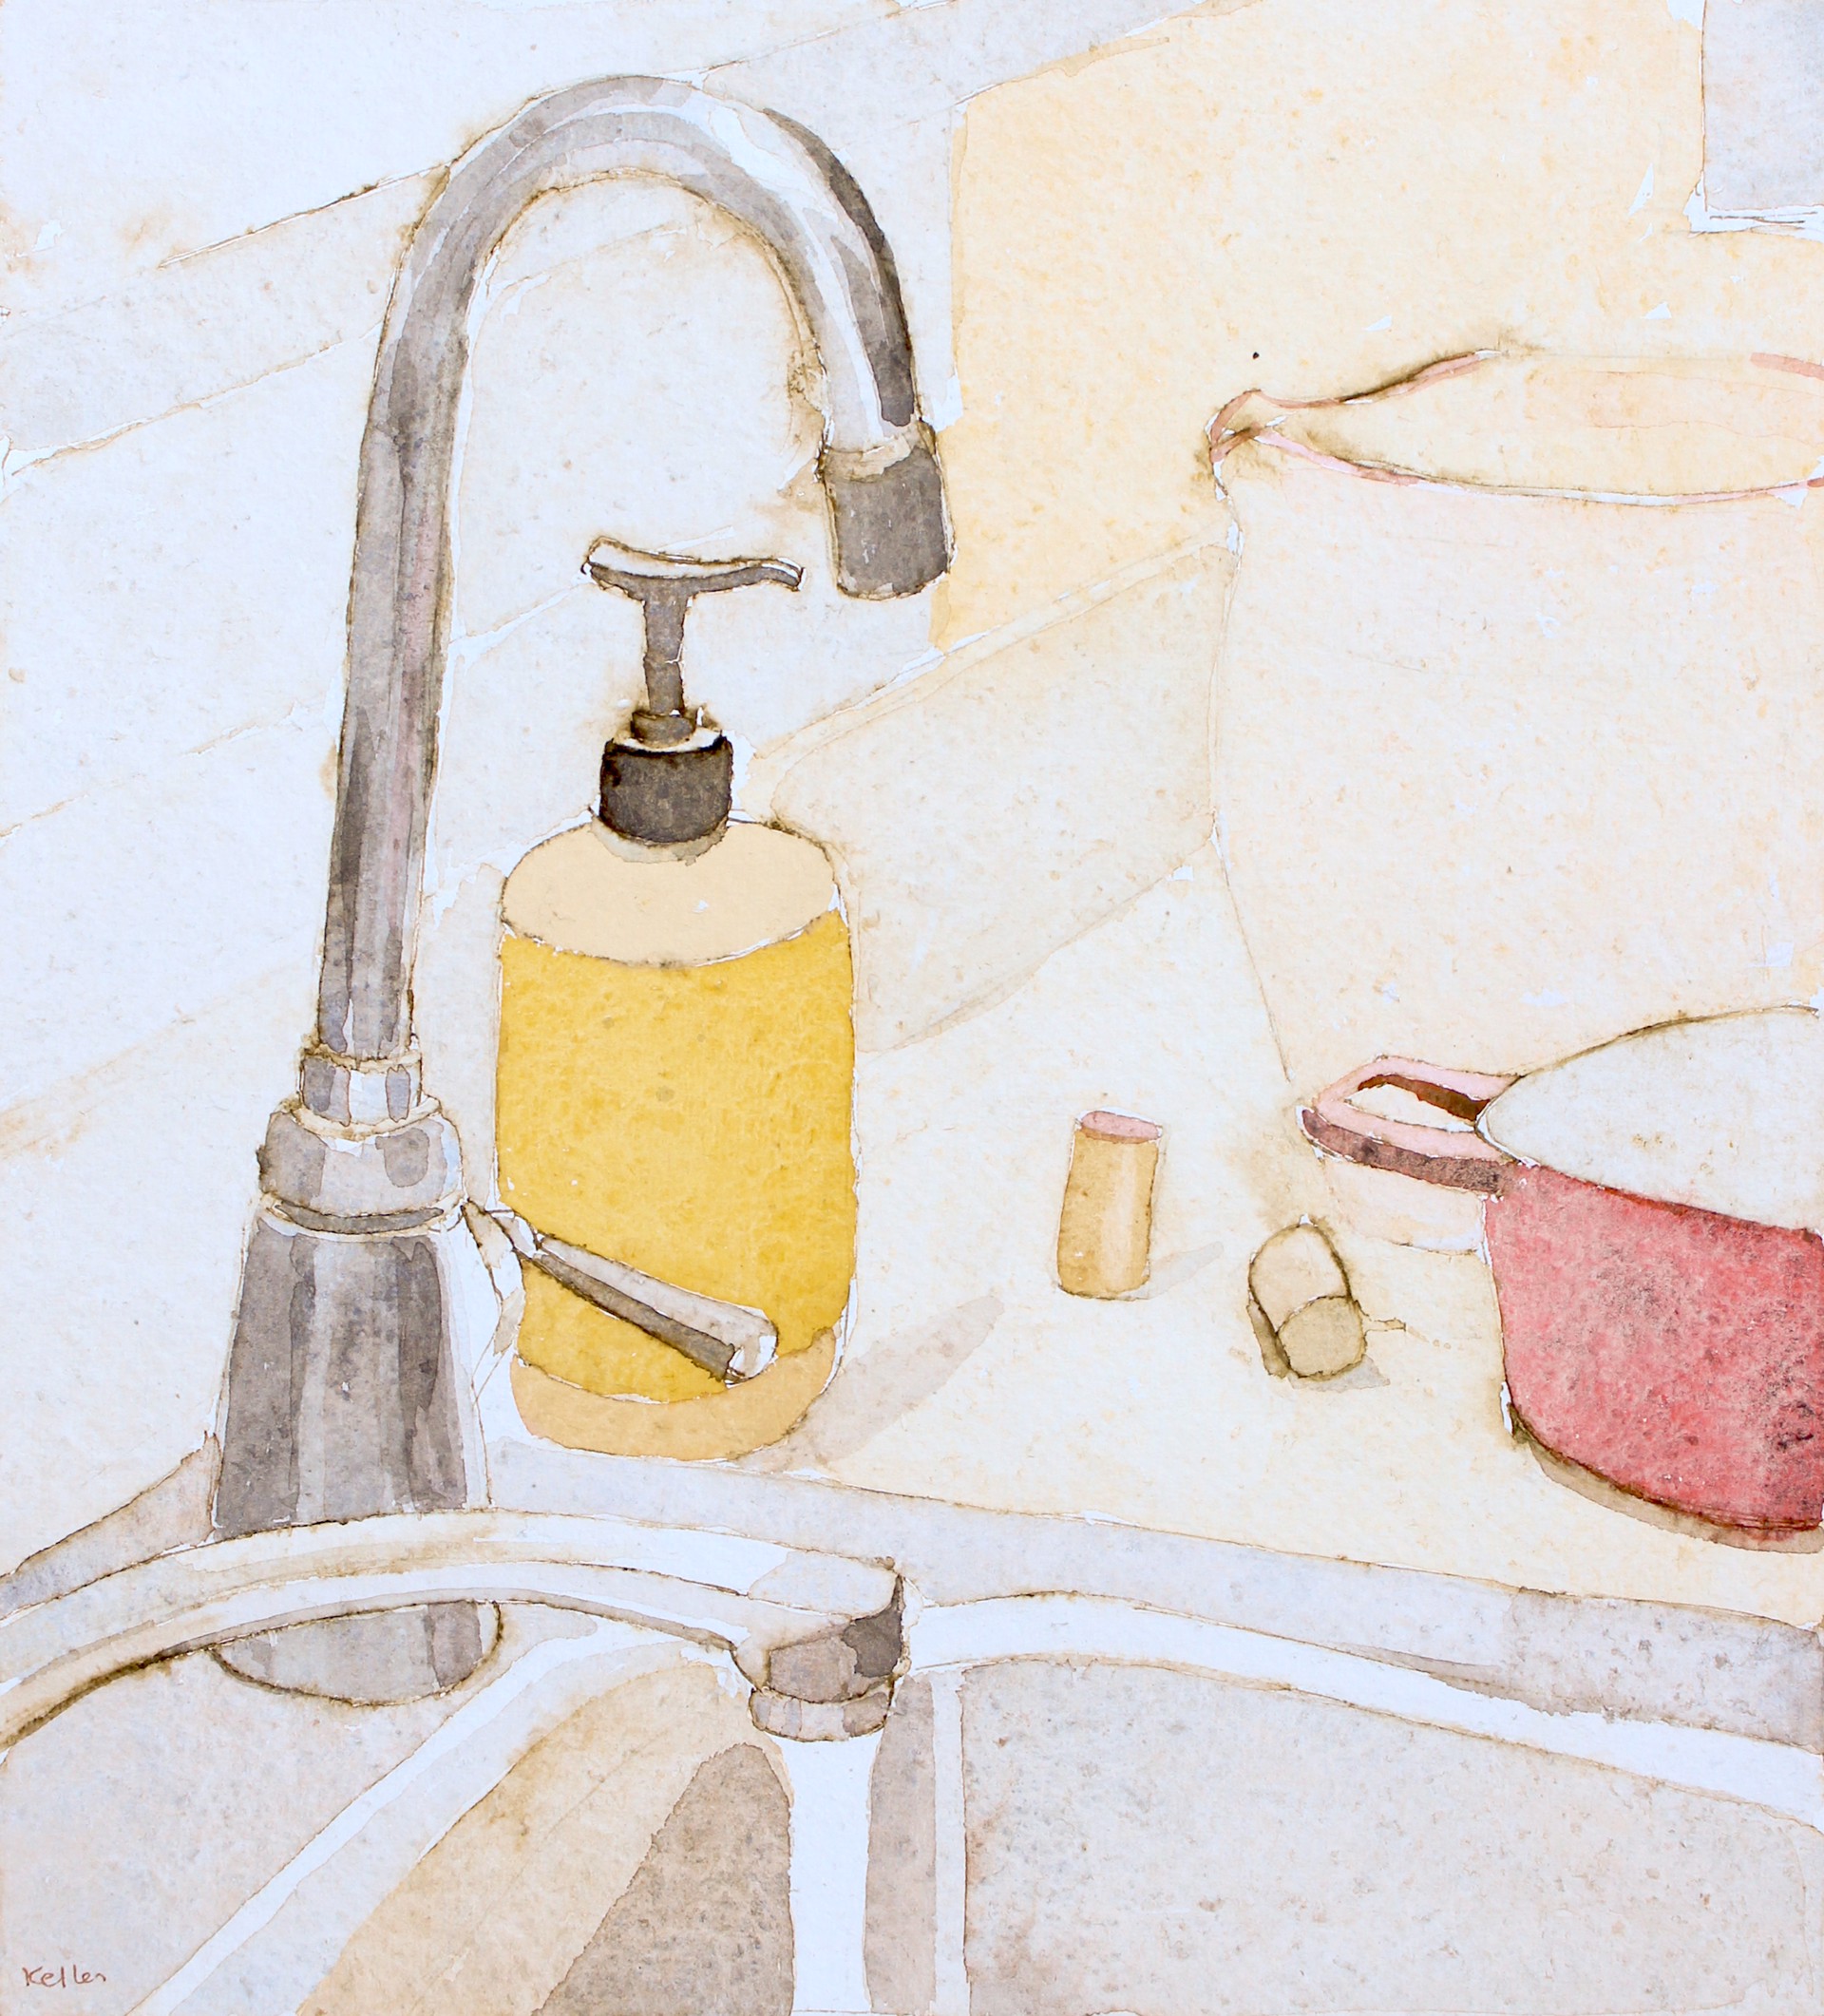 Meyer's Lemon Soap by Kathryn Keller